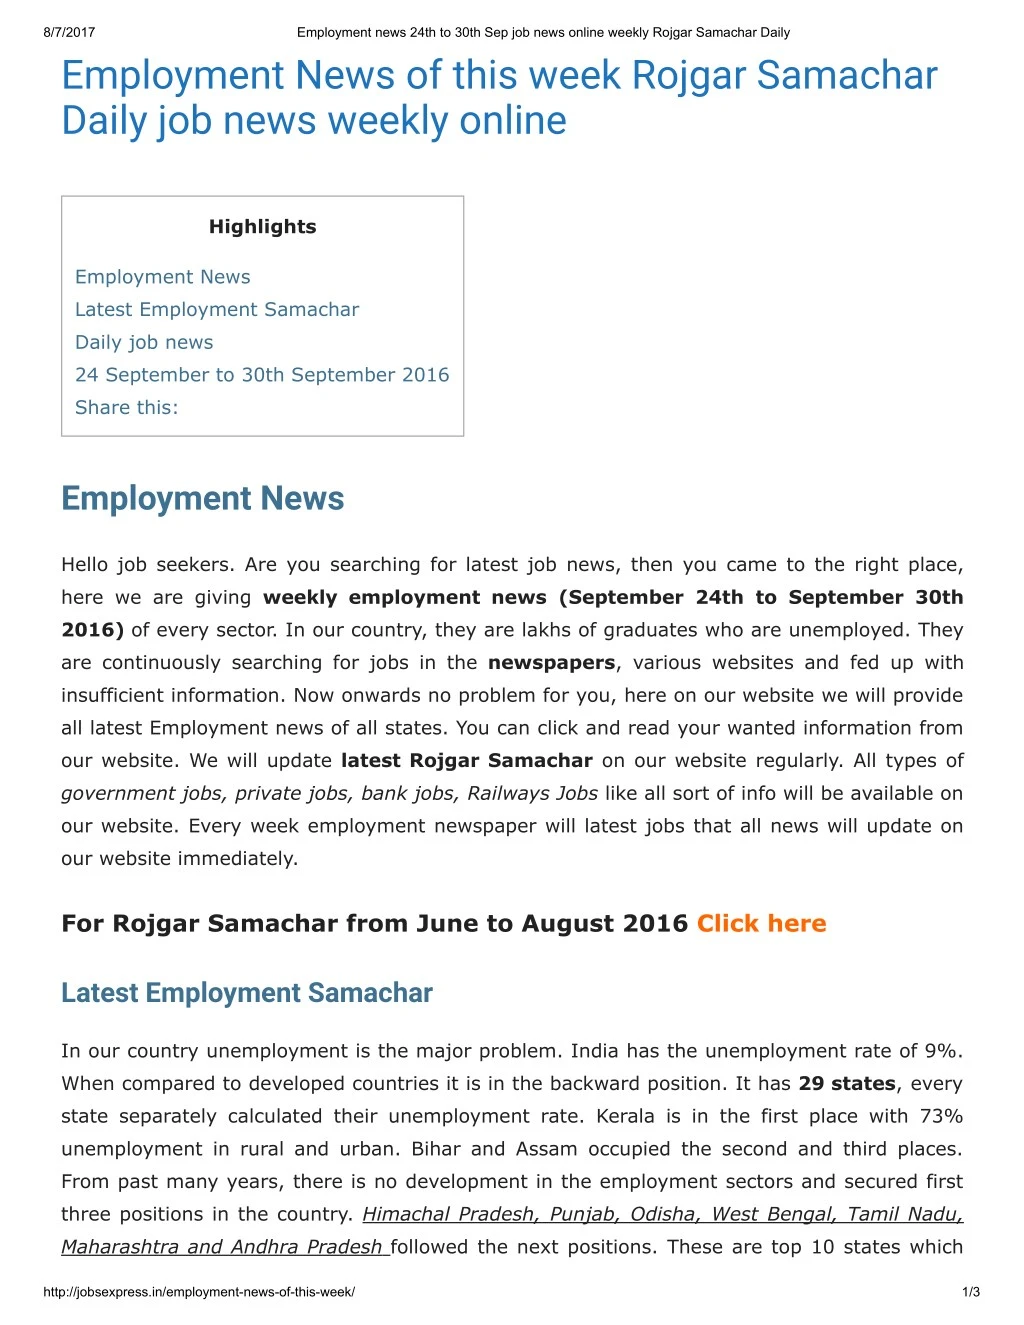 8 7 2017 employment news of this week rojgar